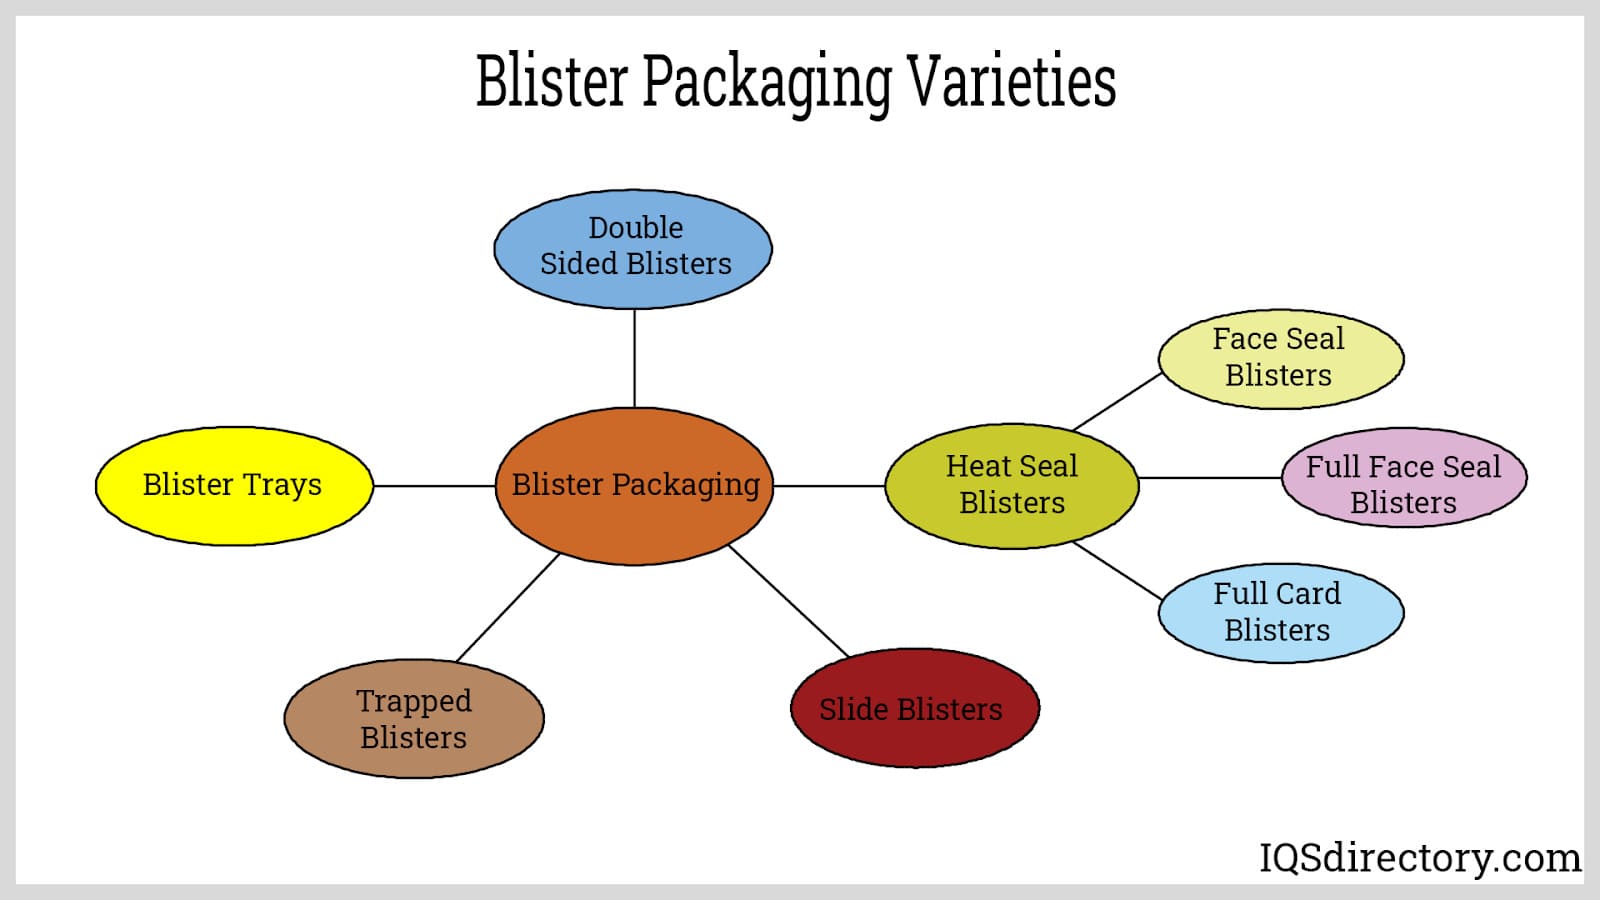 Blister Packaging Varieties